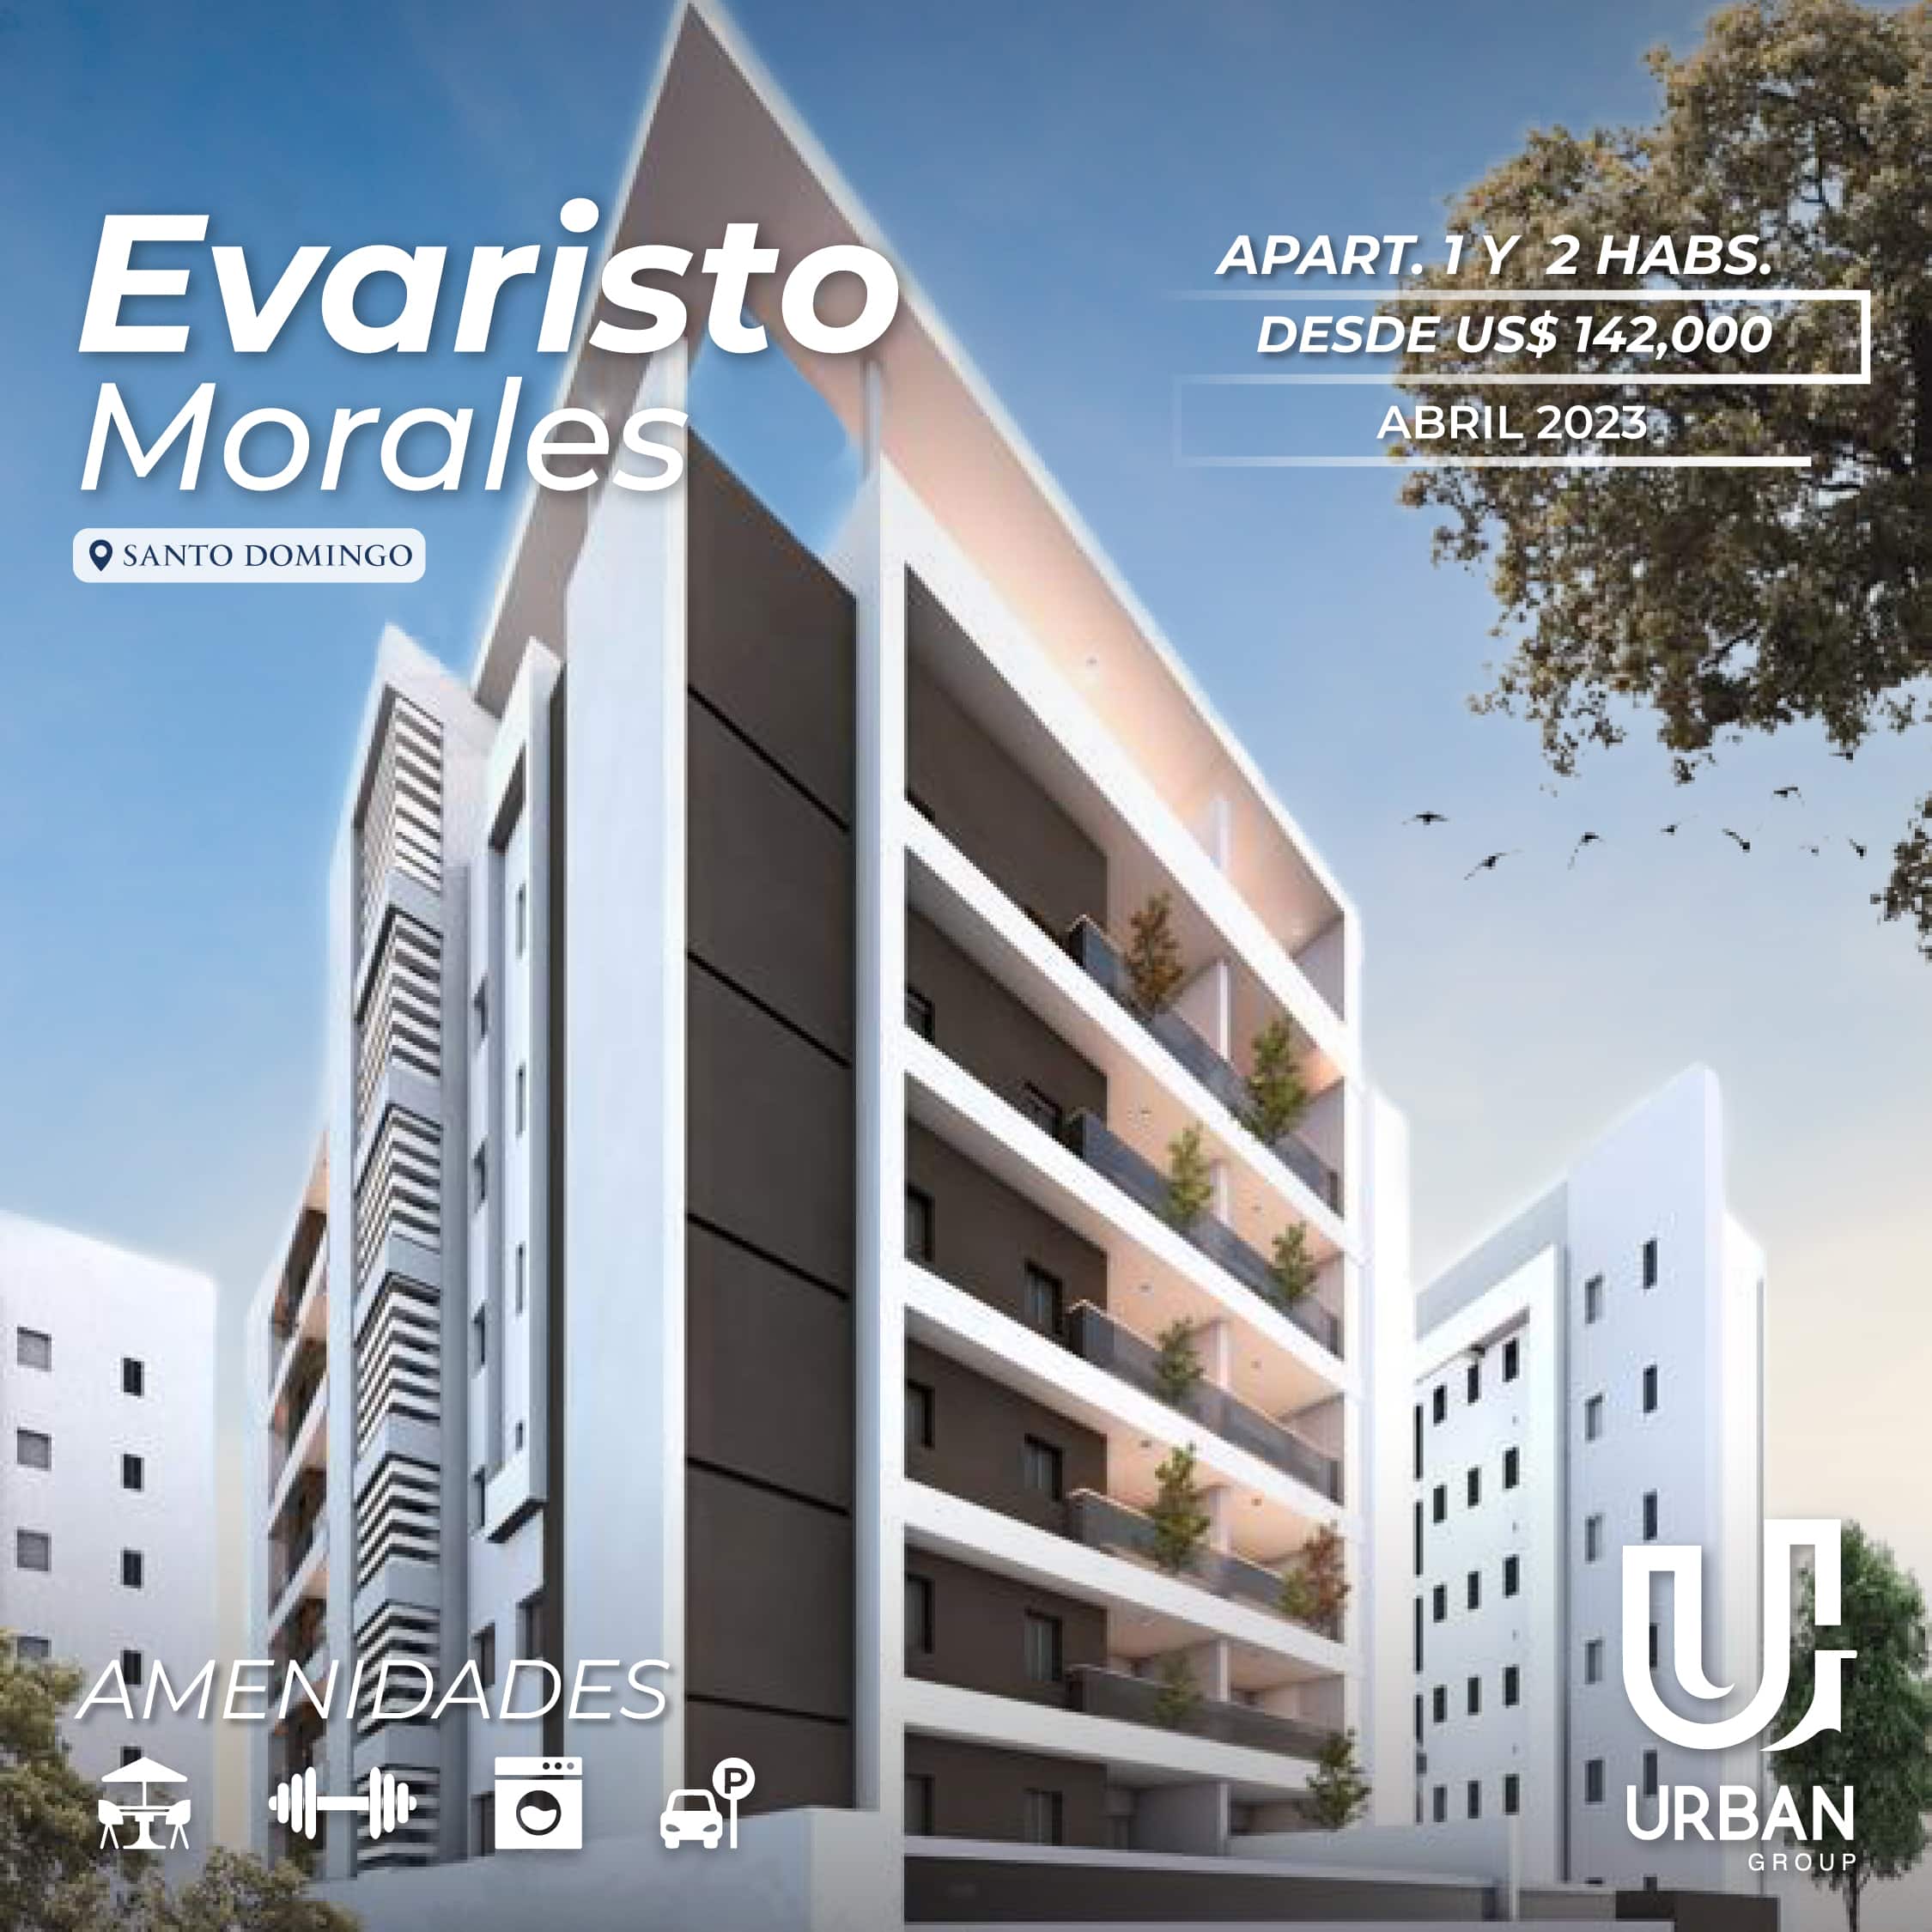 Apartamentos de 1 & 2 Habs. Listos en Evaristo Morales desde US$142,000